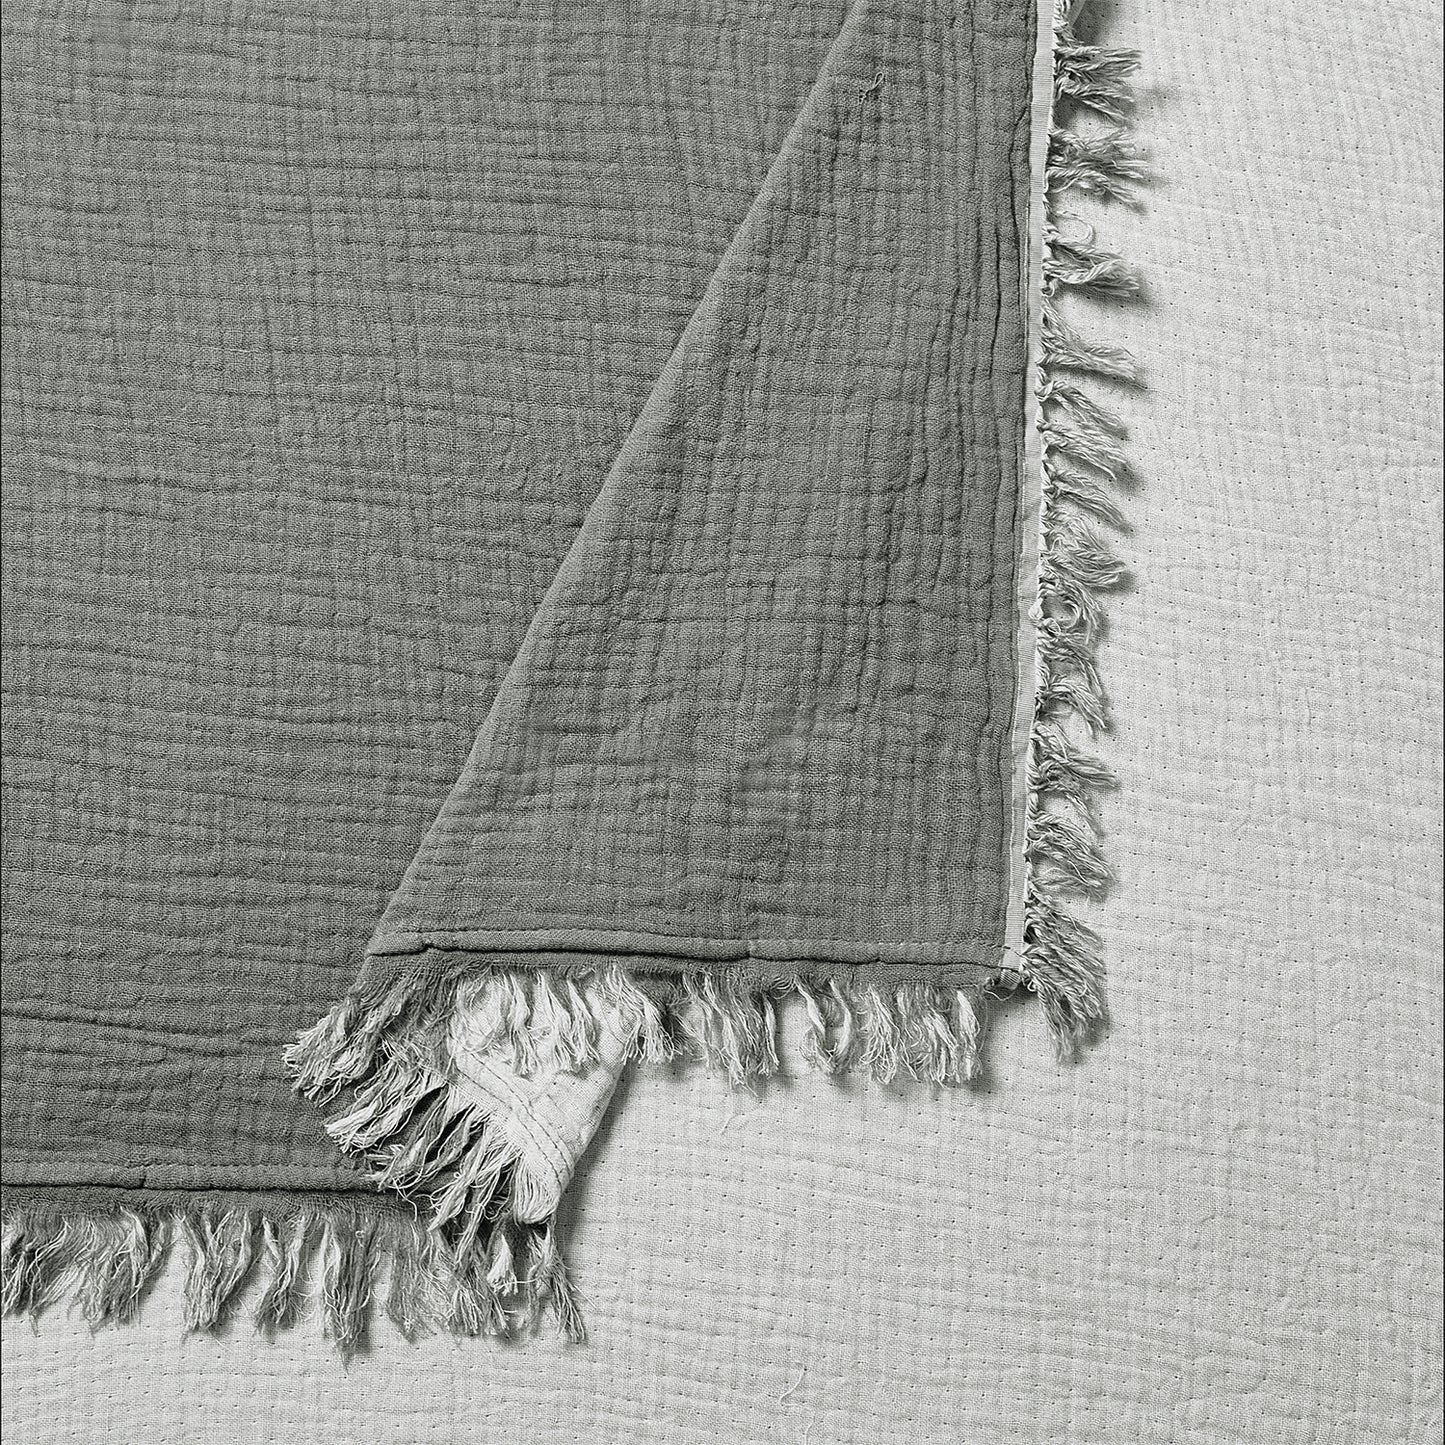 Ernestine Gauze 3-Piece Bedspread Set (Grey)